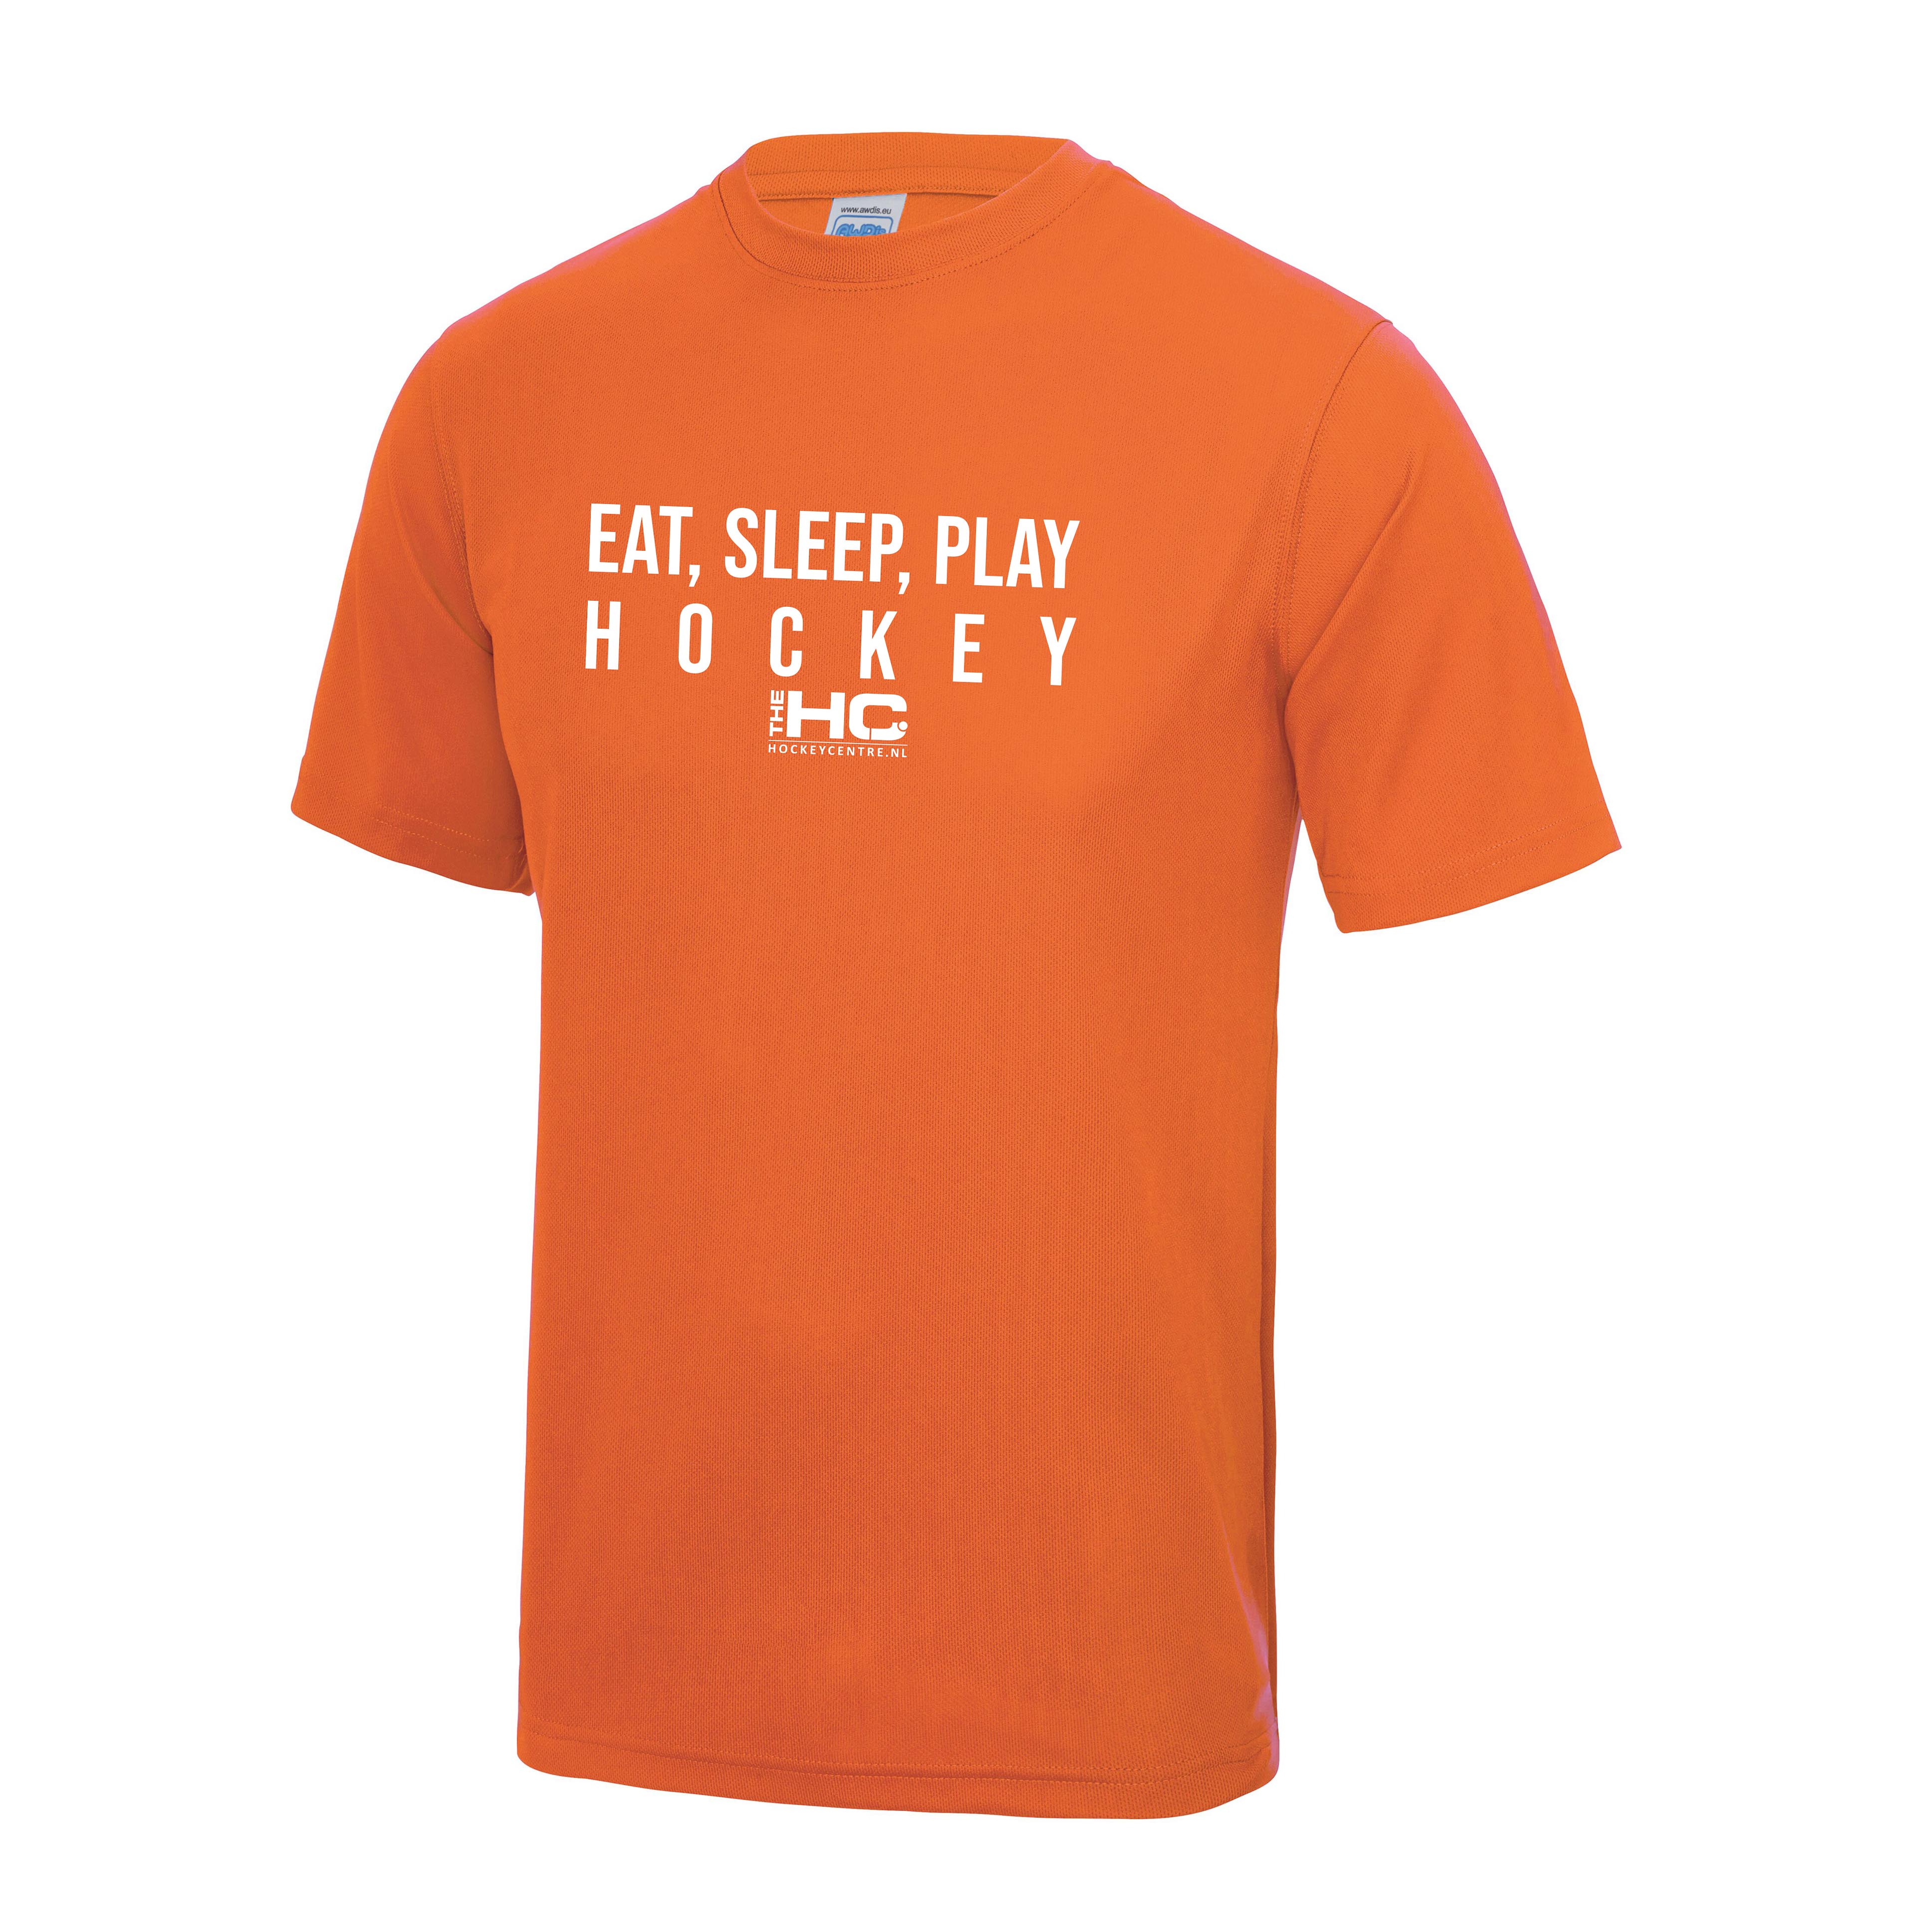 Eat Sleep Play Hockey Shirt